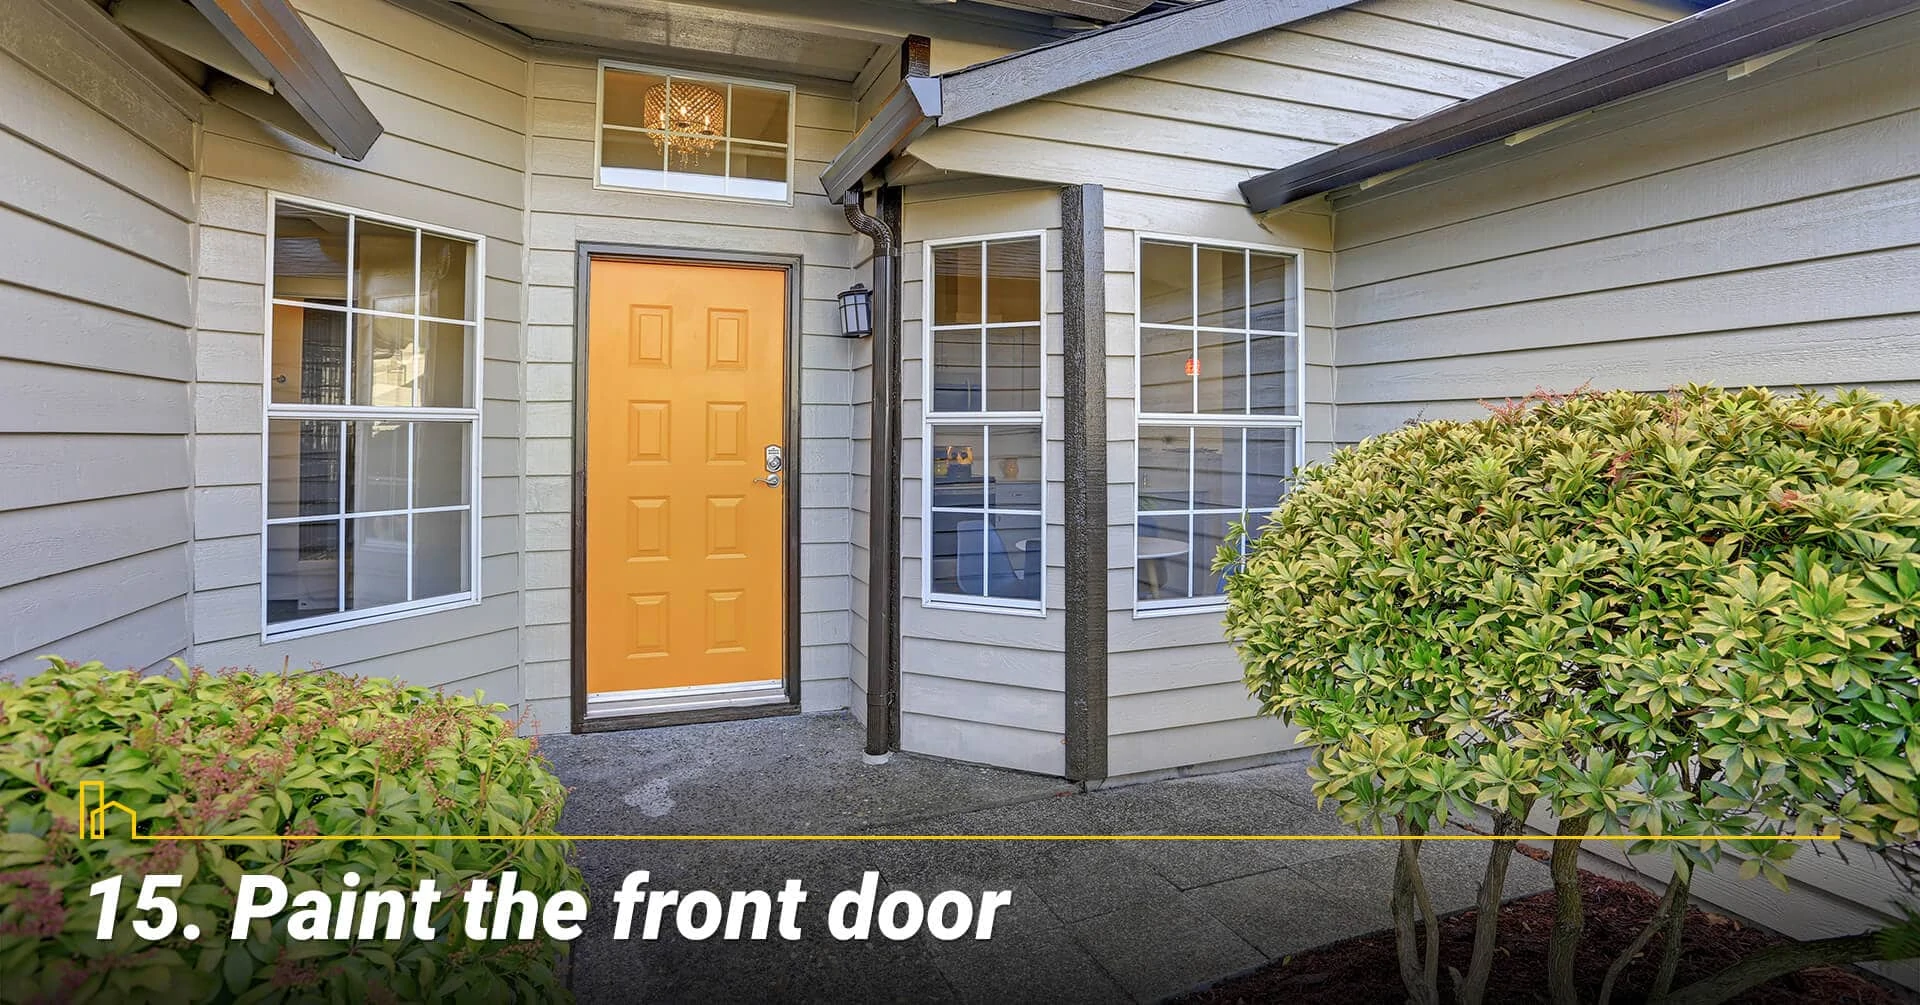 Paint the front door, make the front door looks new